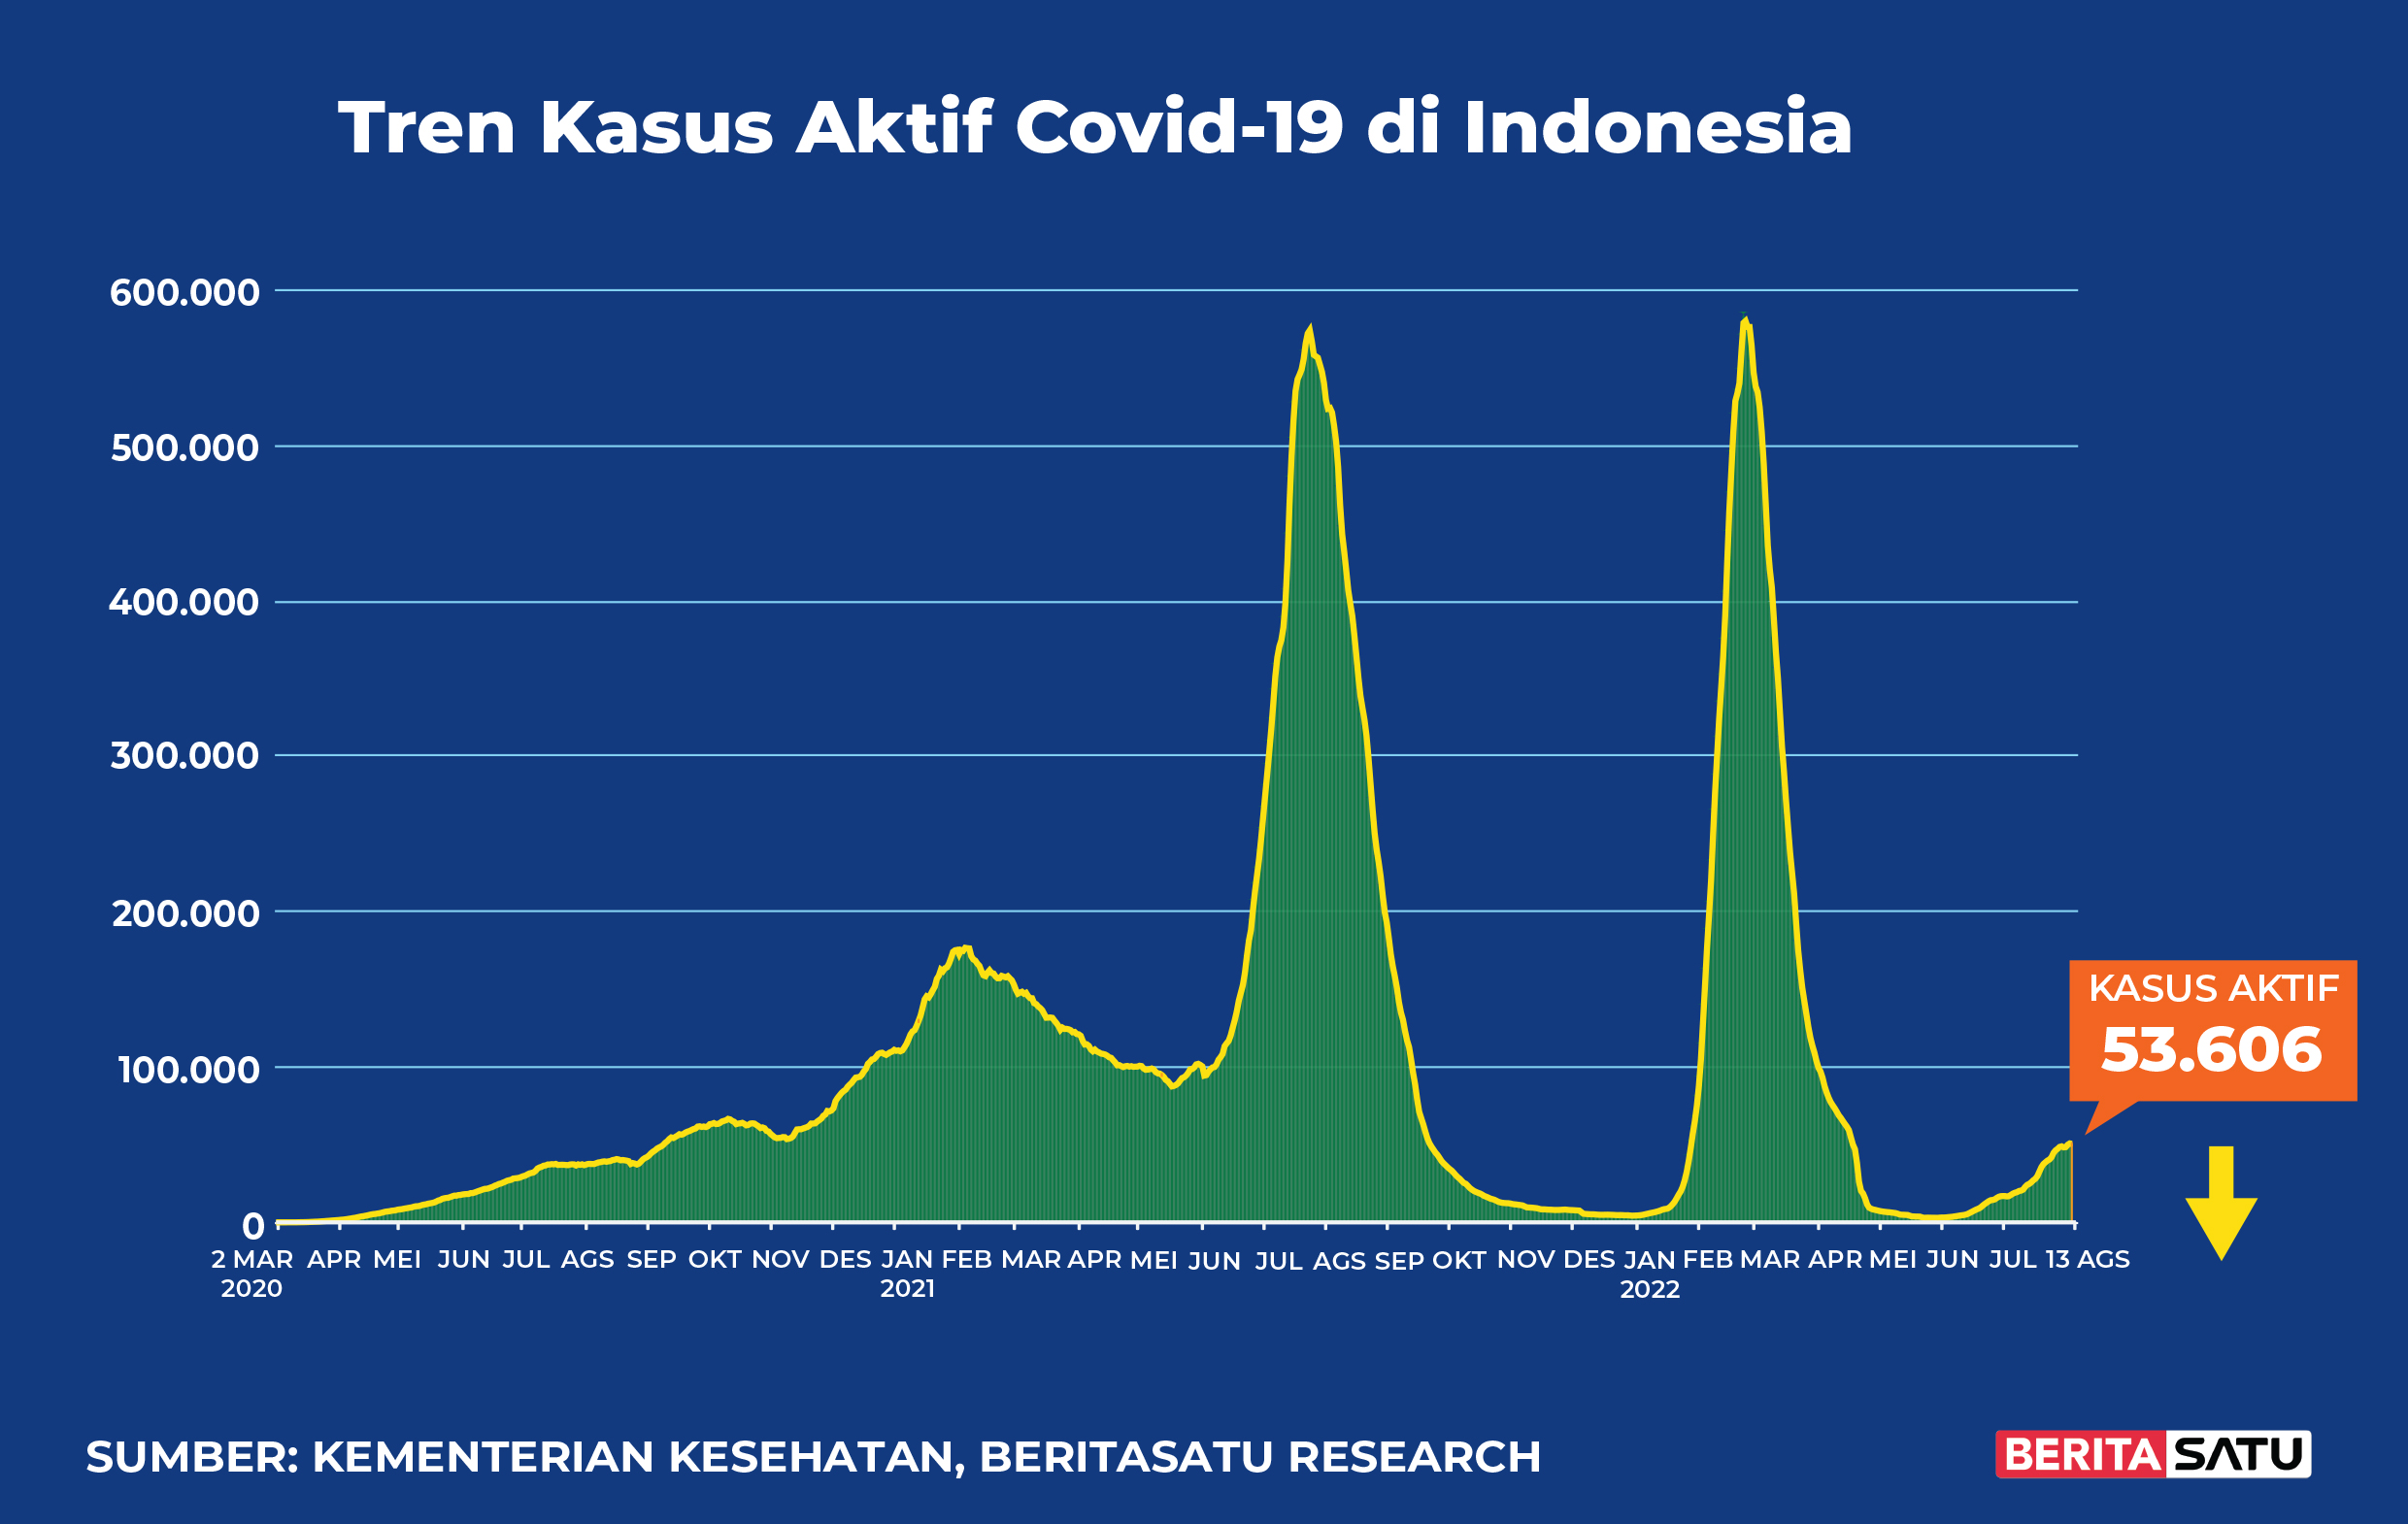 Kasus Aktif Covid-19 di Indonesia sampai 13 Agustus 2022